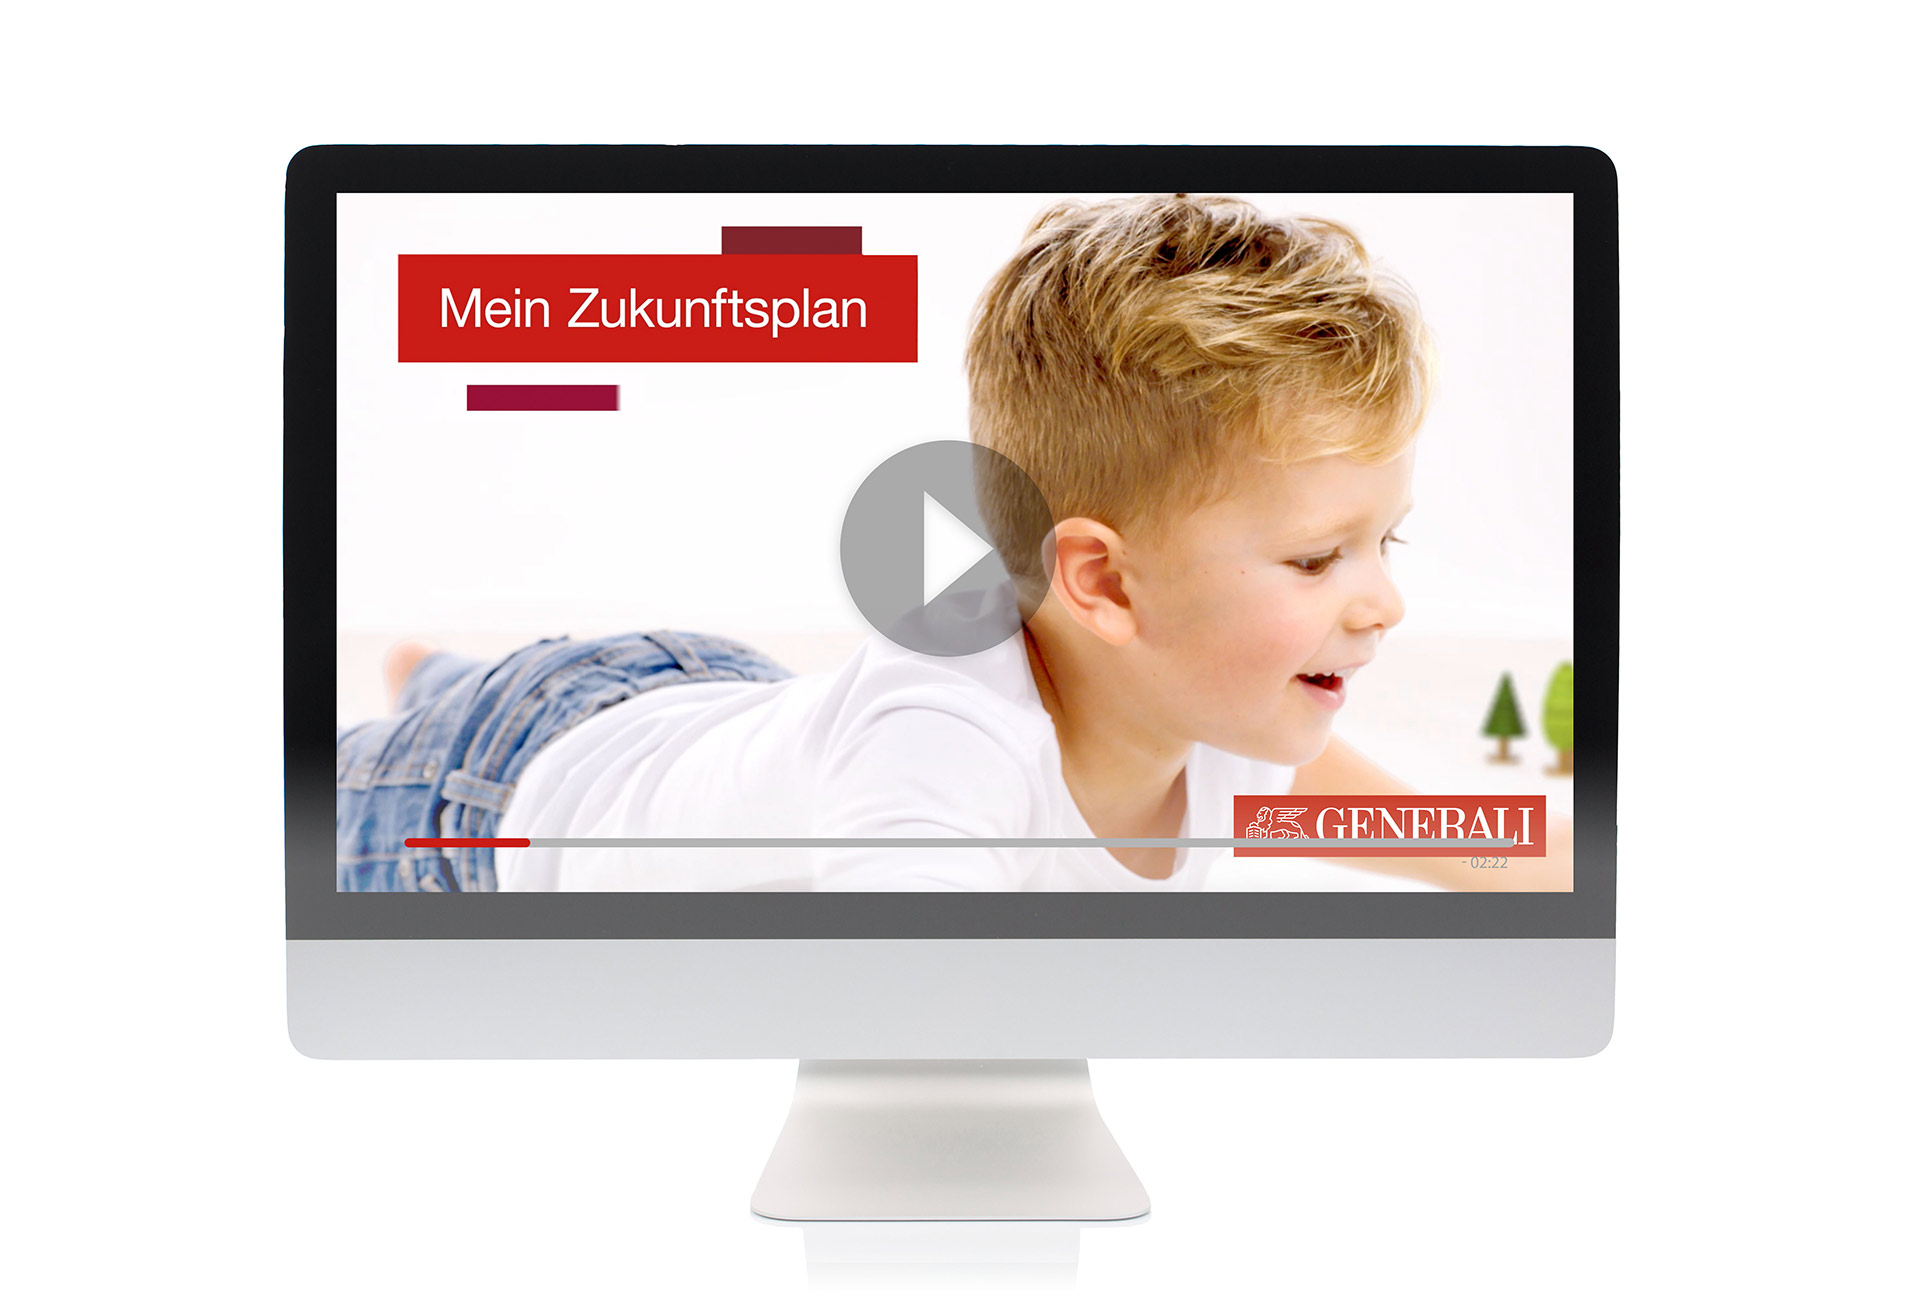 Video: Pro Concept - Aachen Münchener Produkteinführung